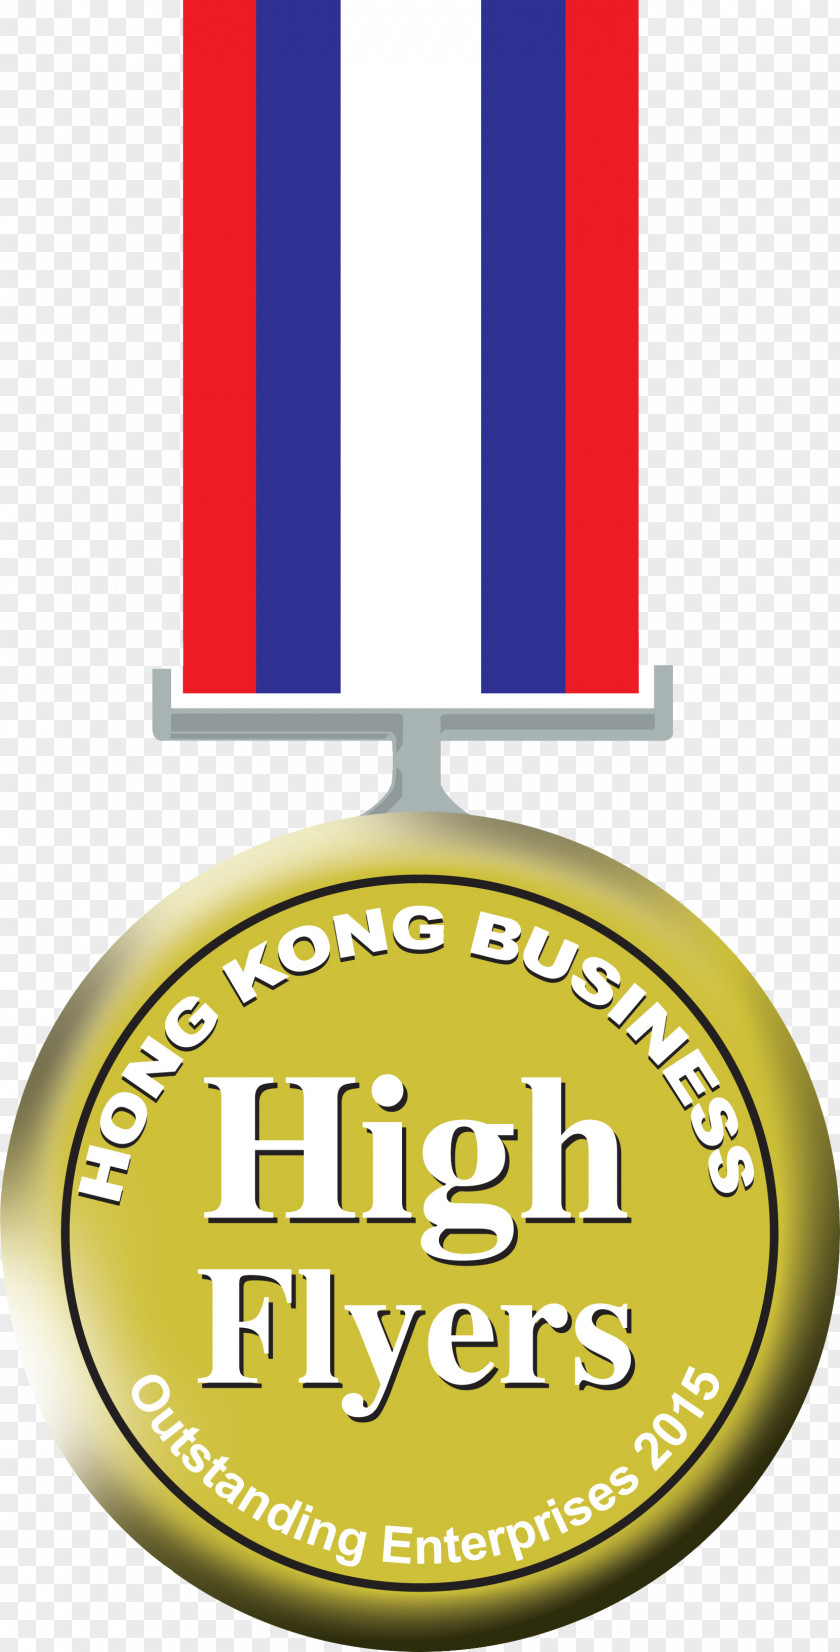 Business Cosmo Hotel Hong Kong Marketing Award Logo PNG